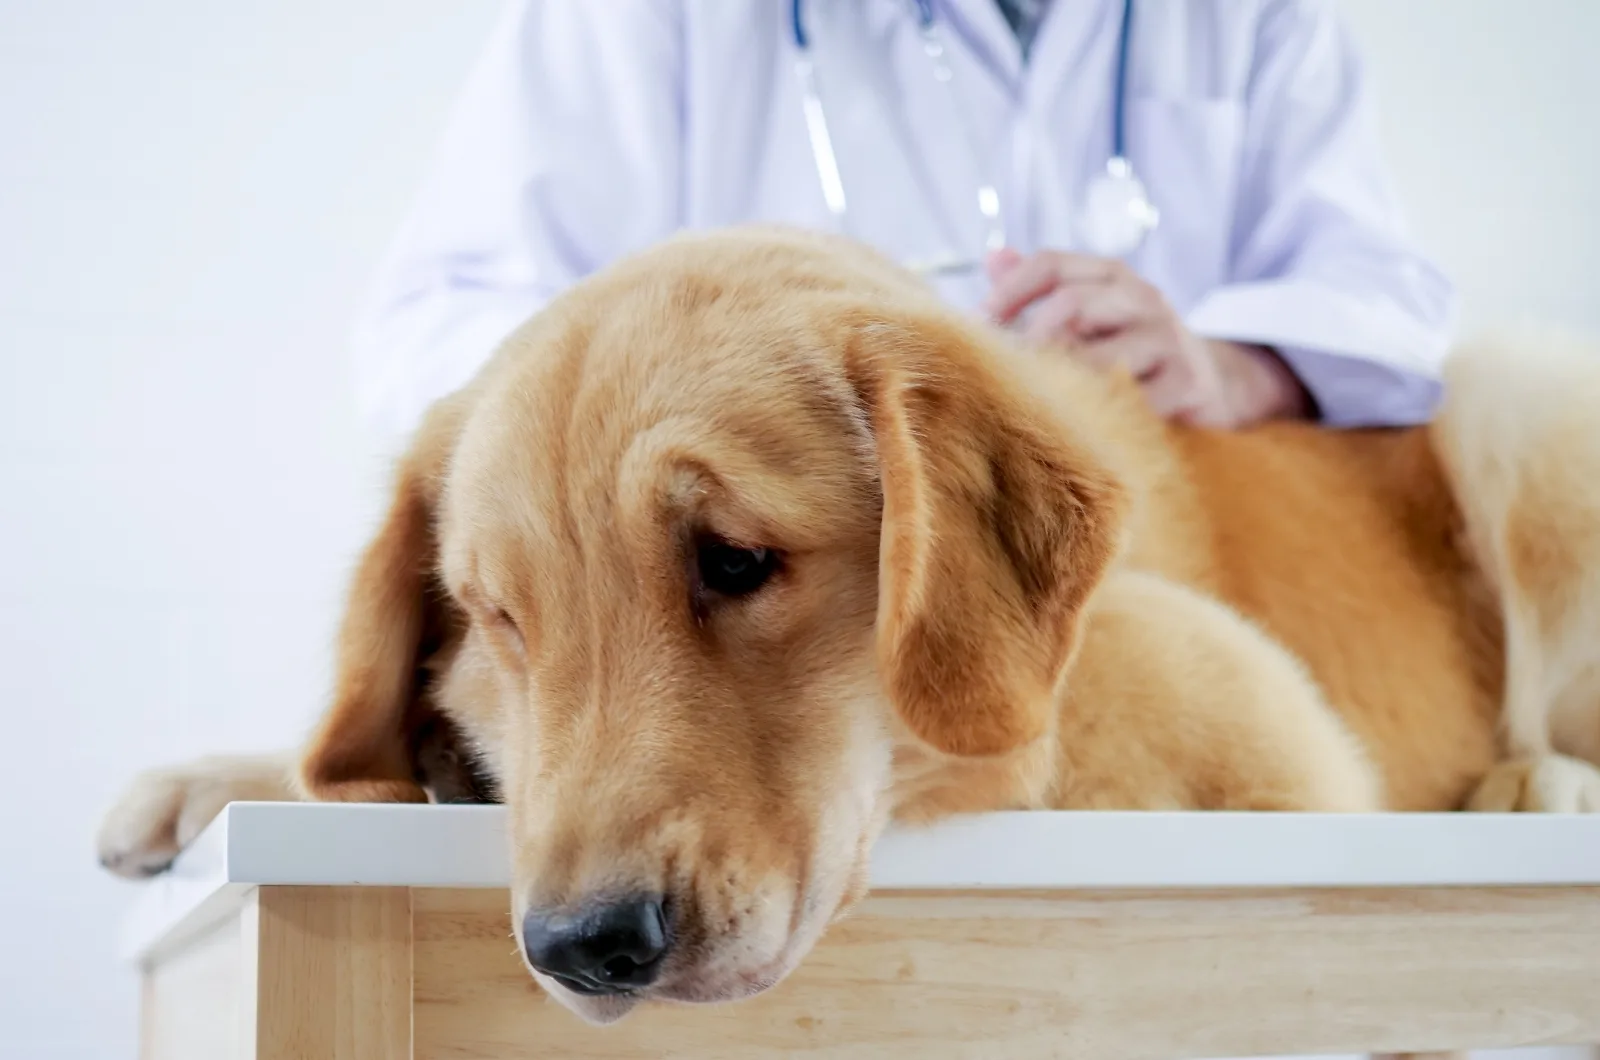 vet examining sick dog